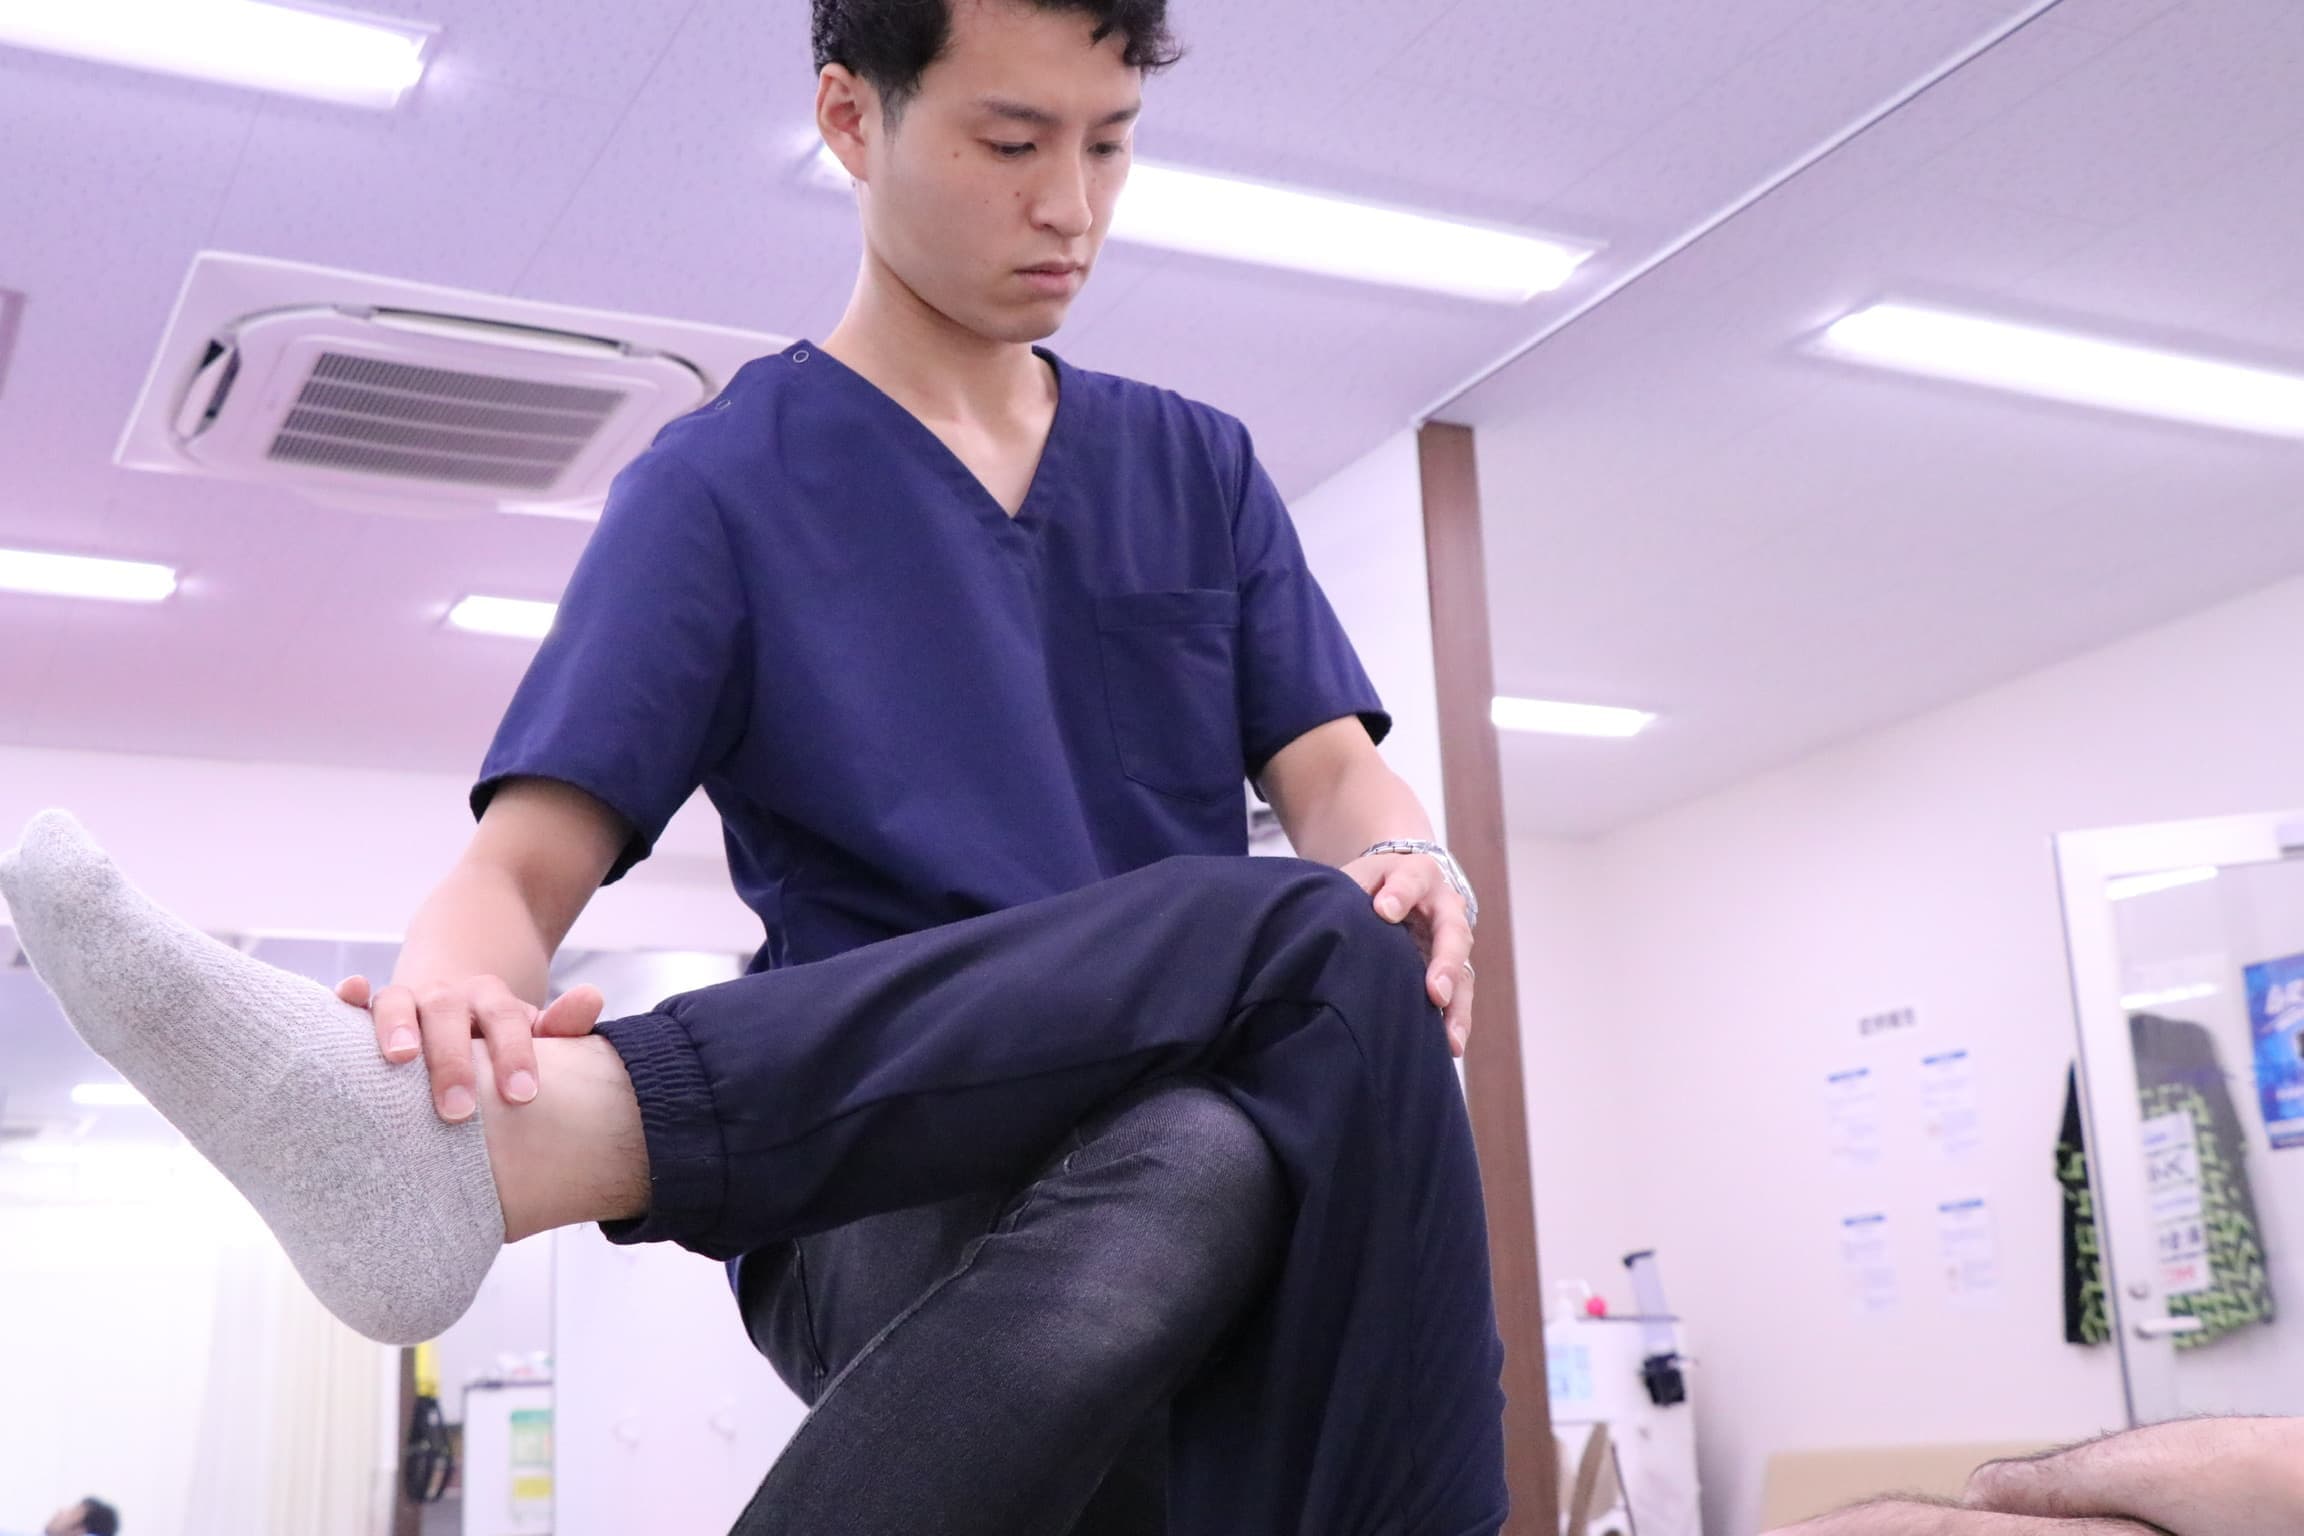 股関節の牽引と膝の屈曲